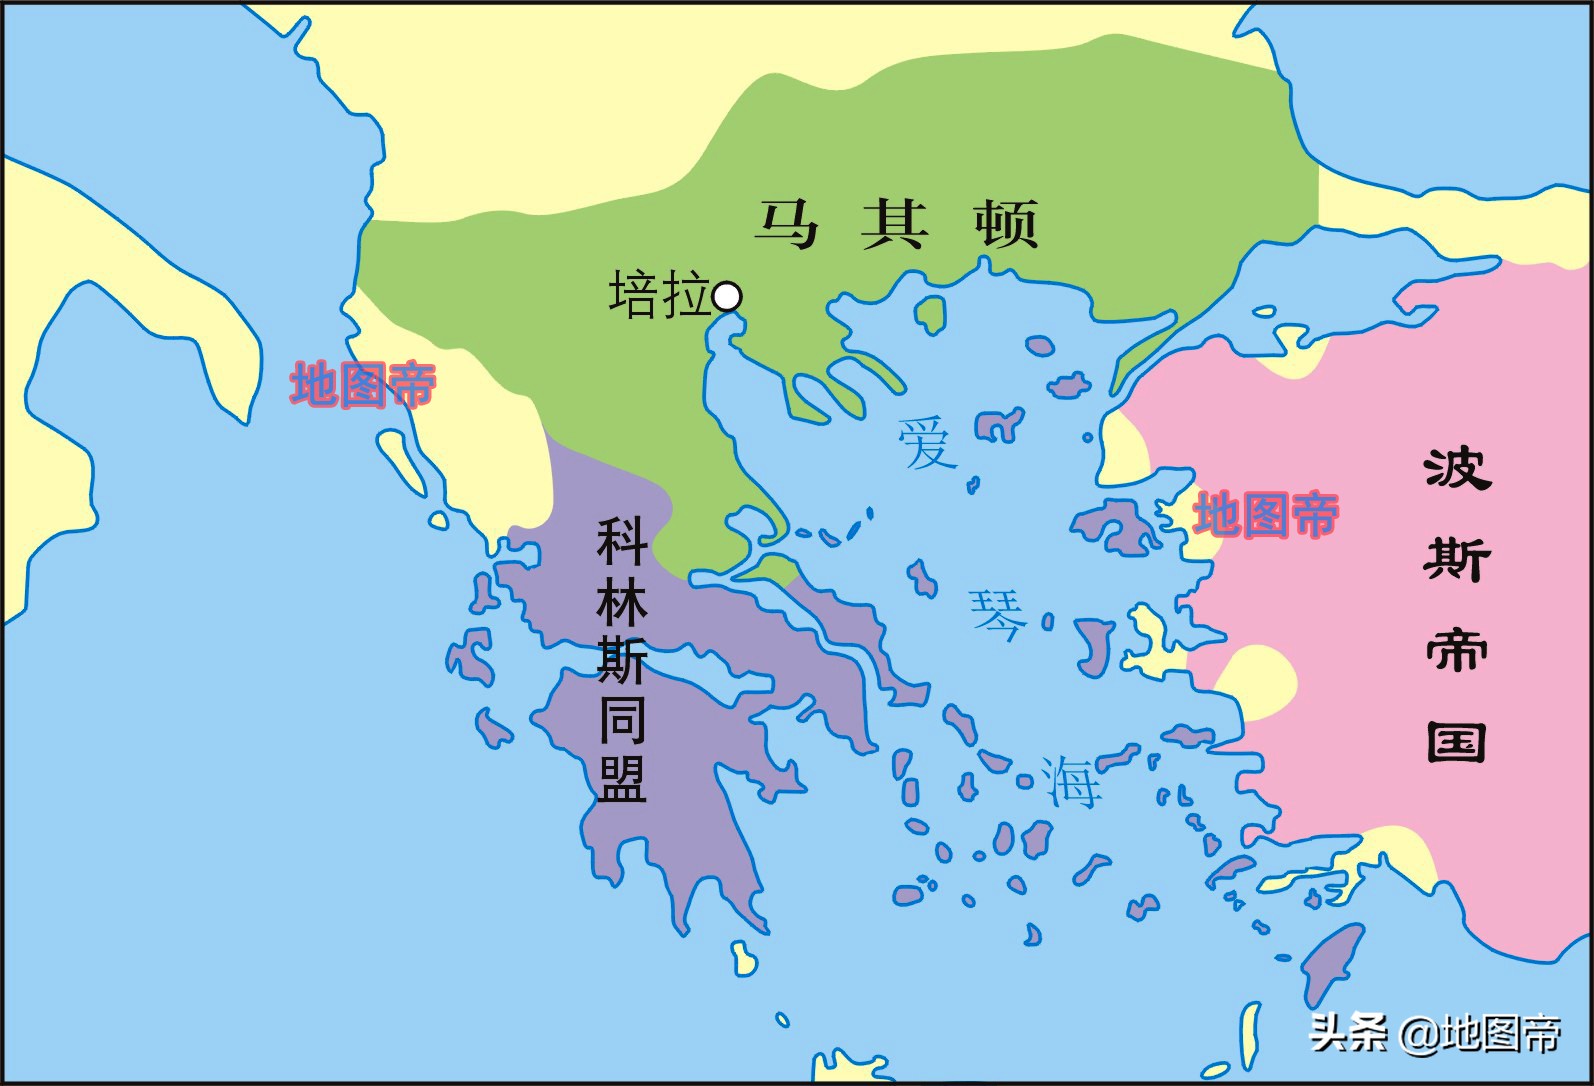 古代马其顿大致位于爱琴海北岸,马其顿帝国(又称亚历山大帝国)是在